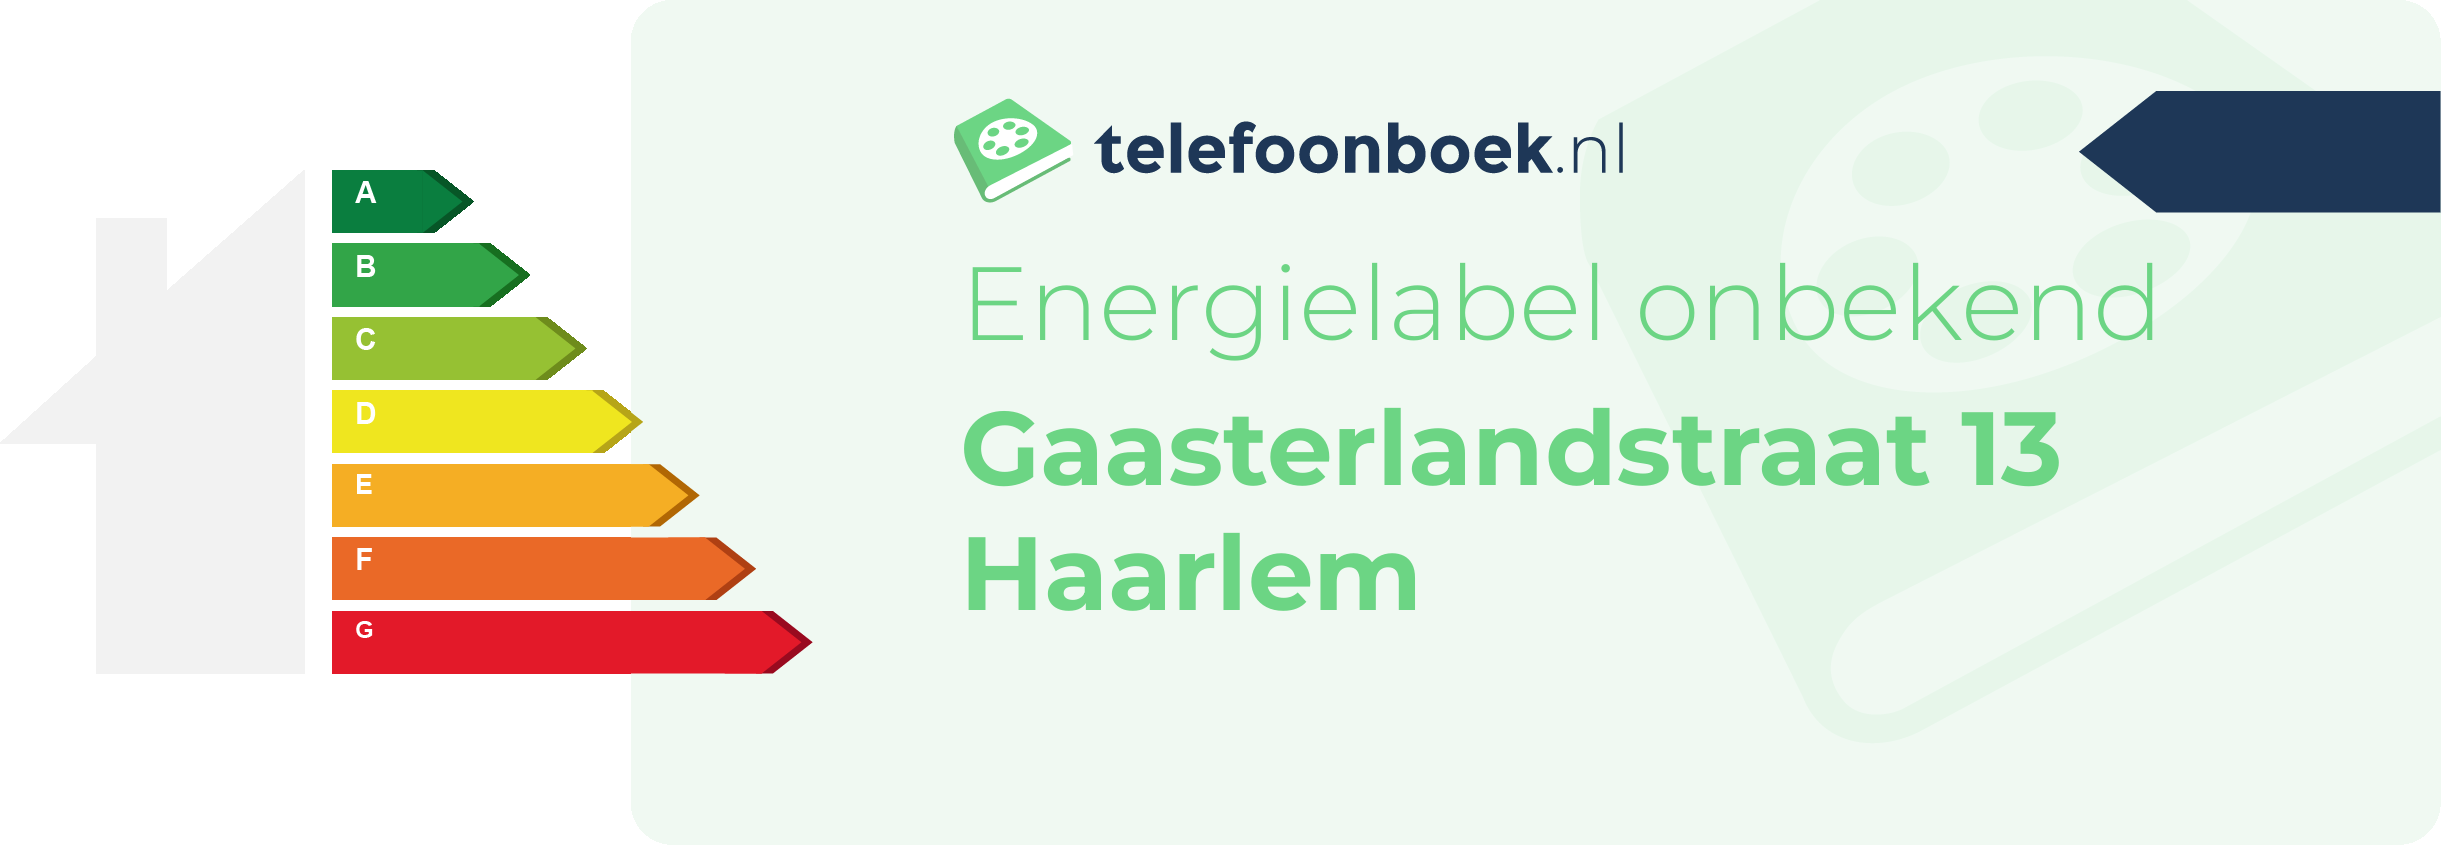 Energielabel Gaasterlandstraat 13 Haarlem